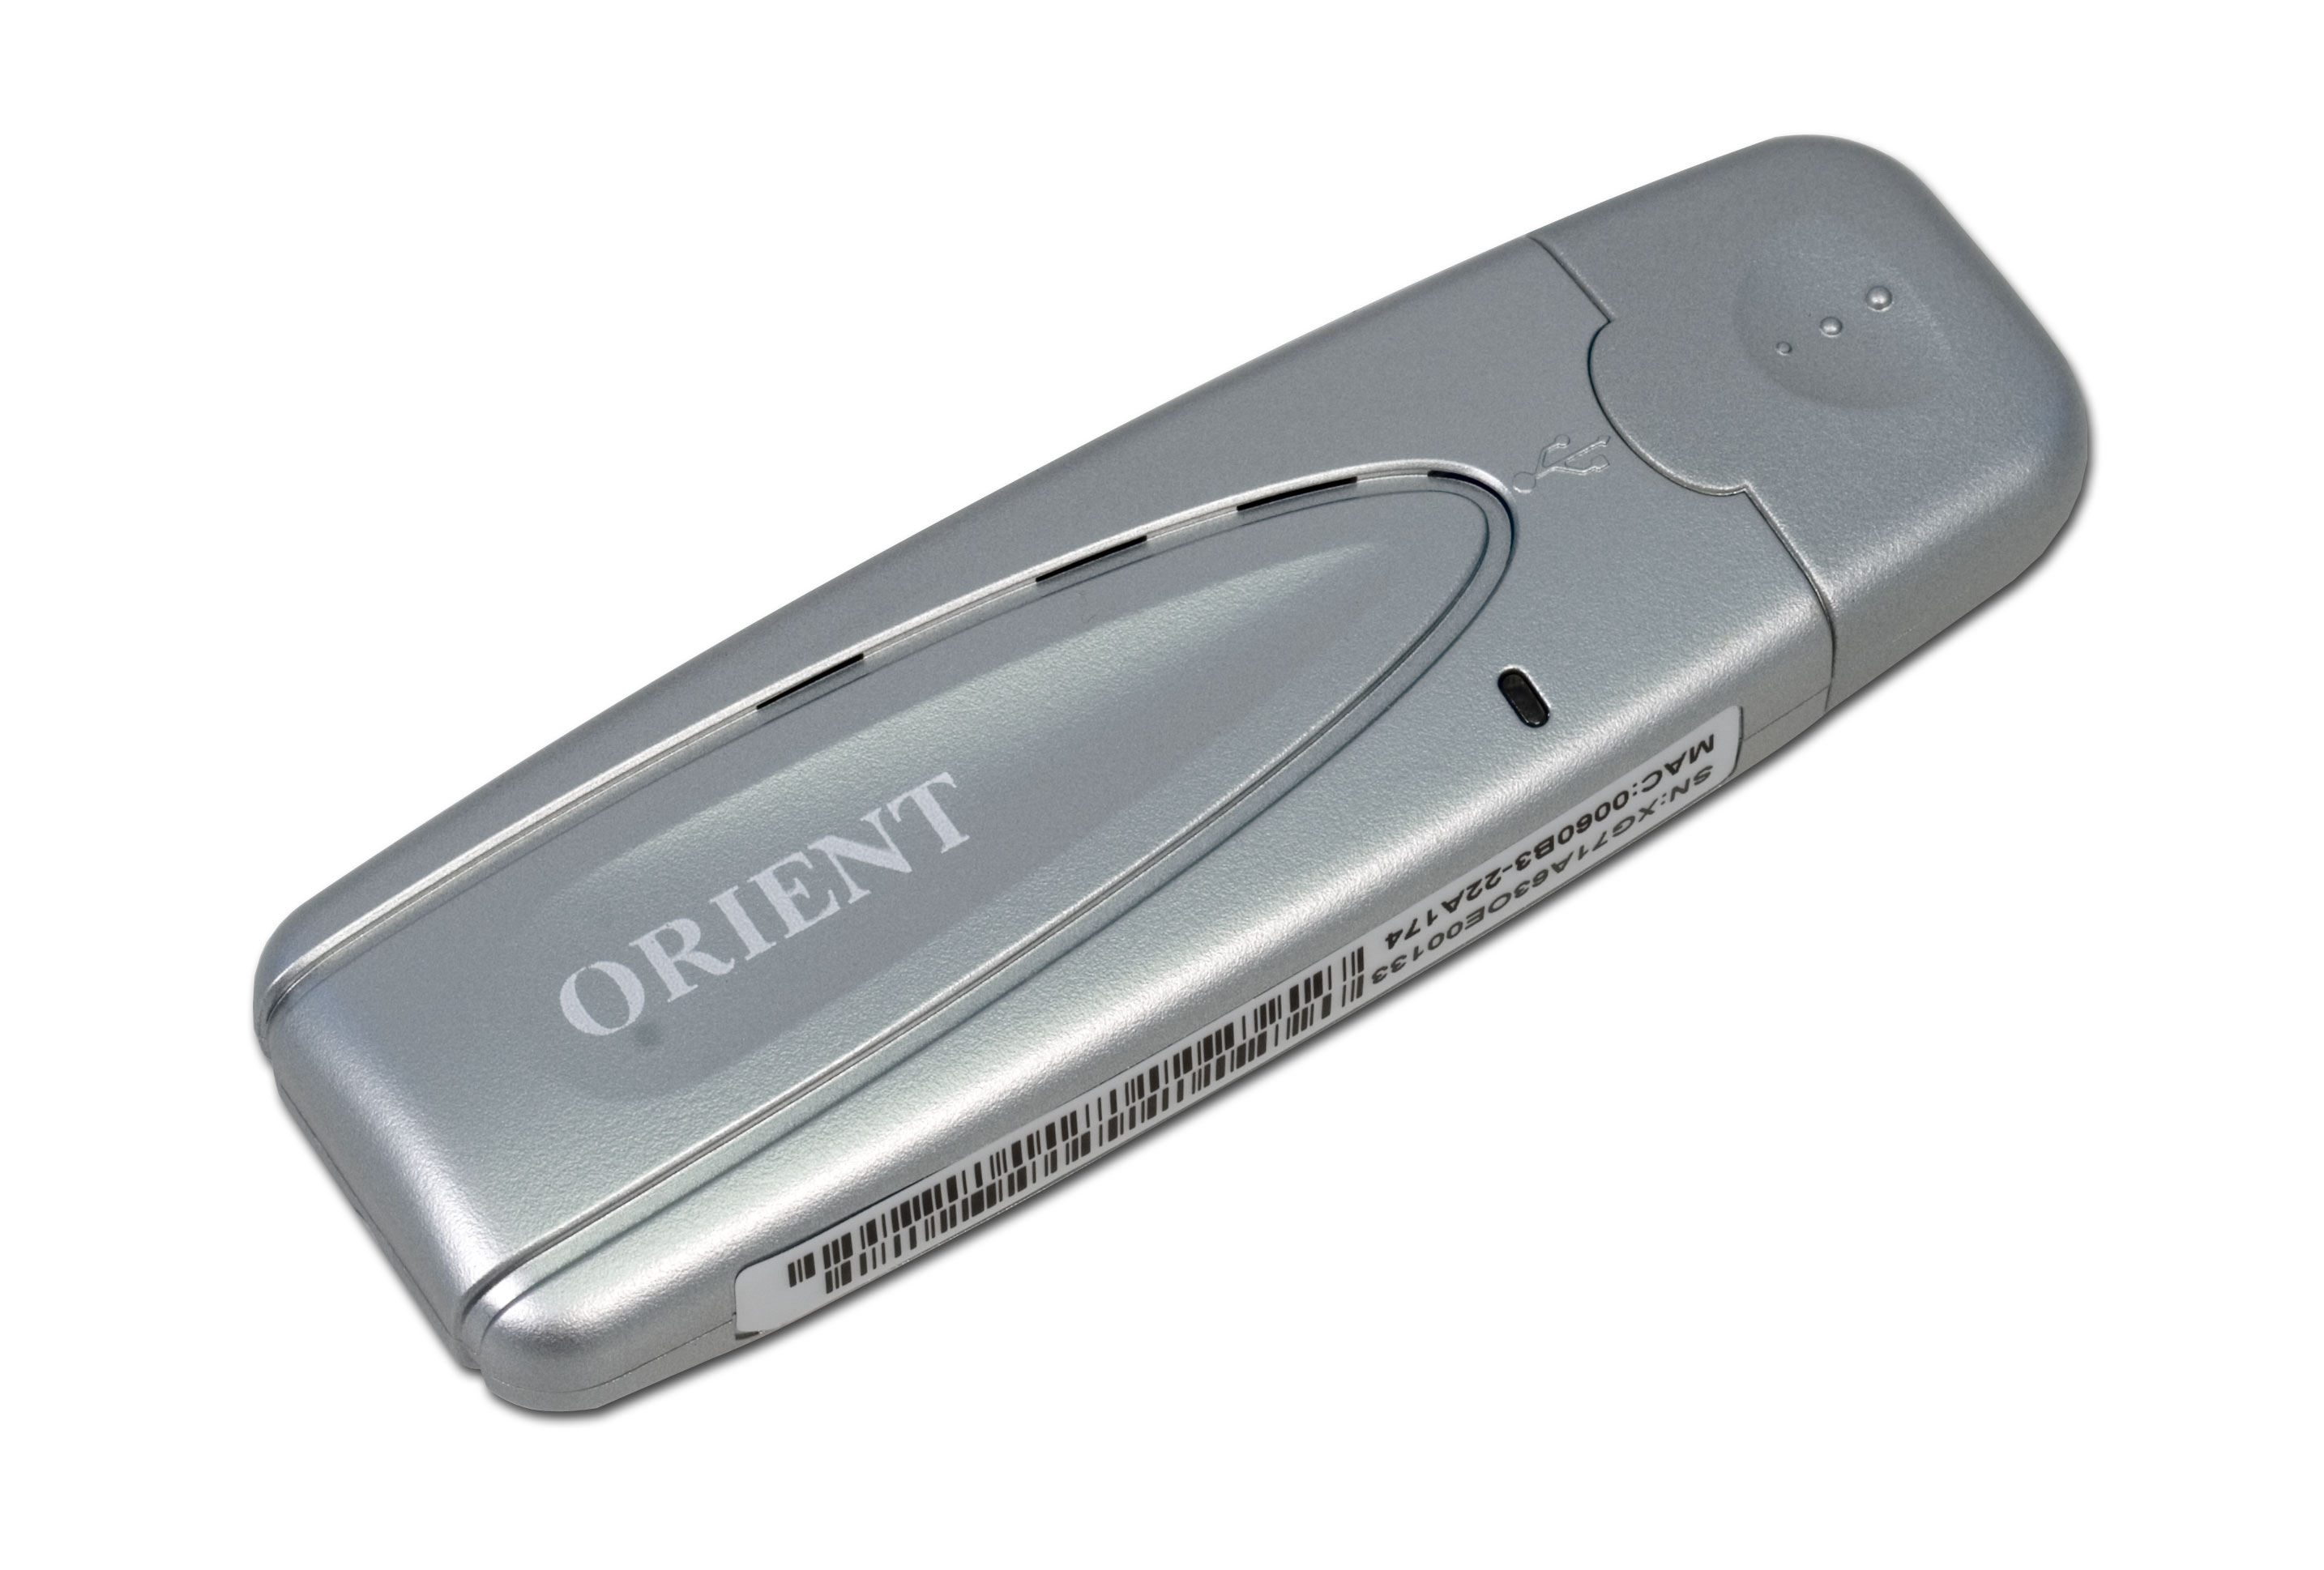  USB-адаптер Orient XG-701A